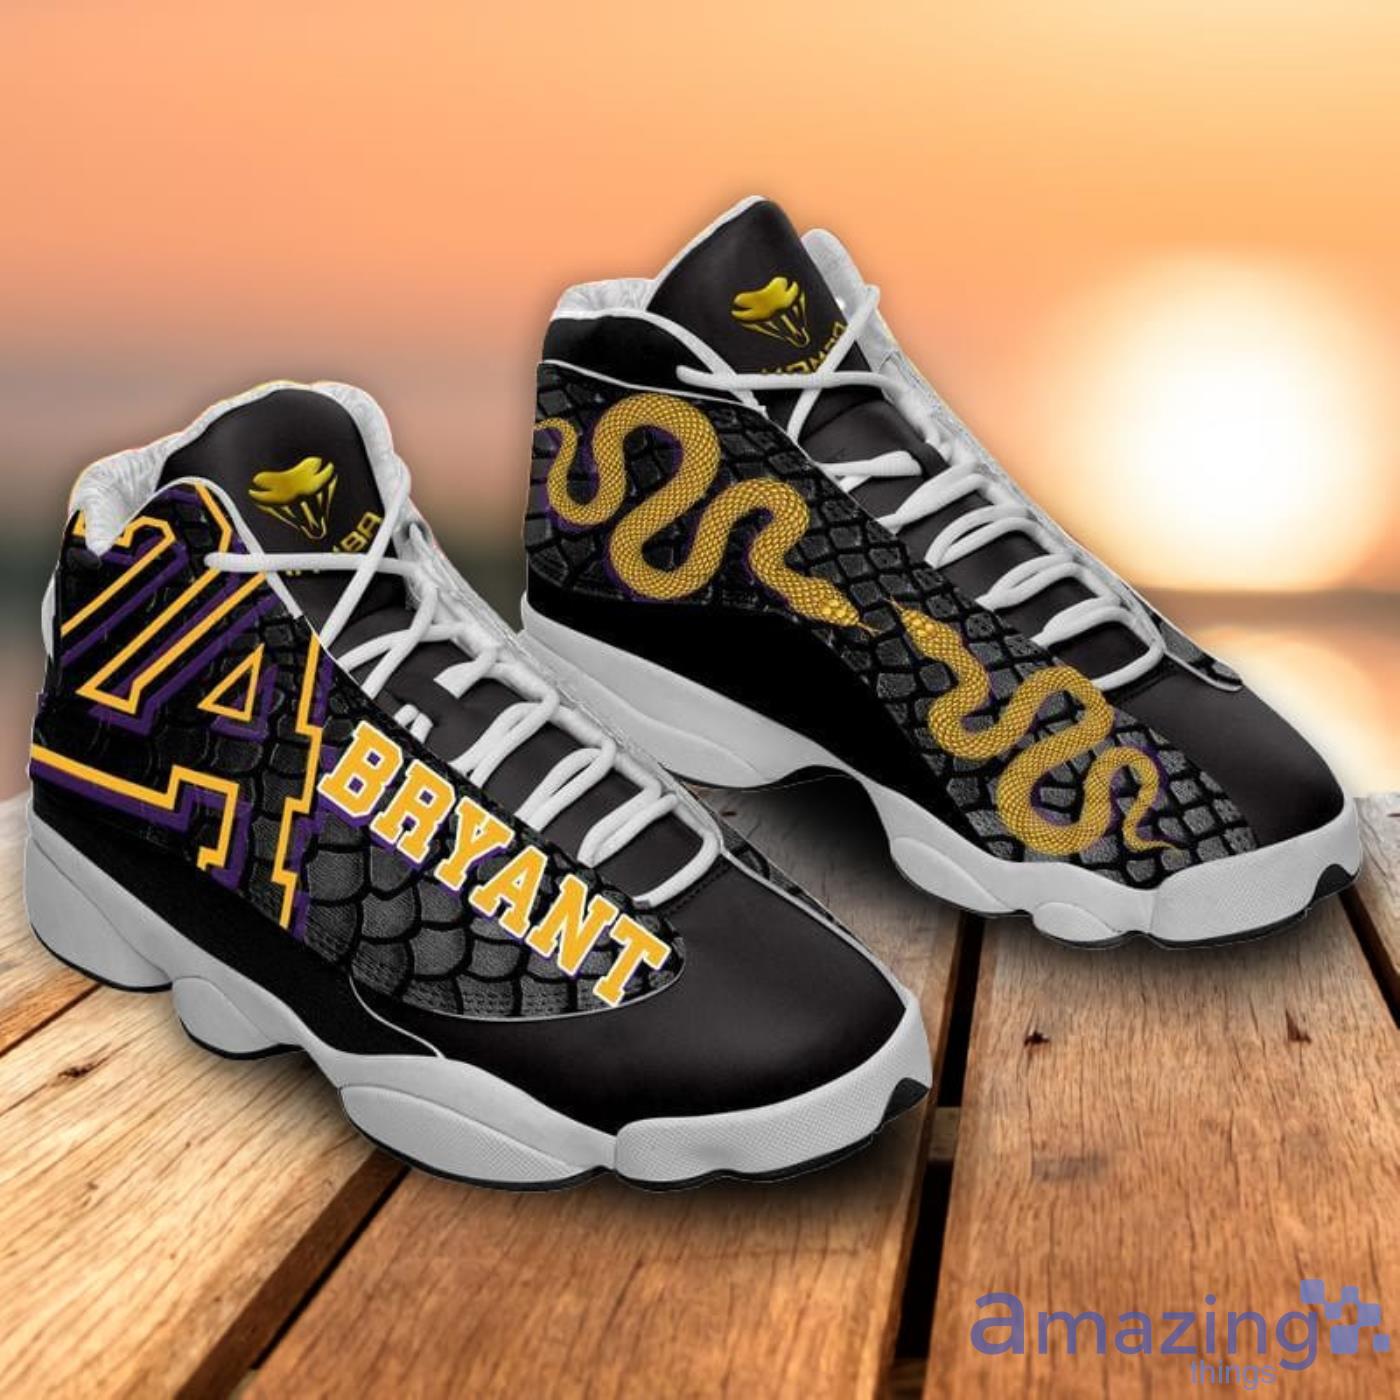 Kobe Bryant ver 1 Air Jordan 13 sneaker - USALast